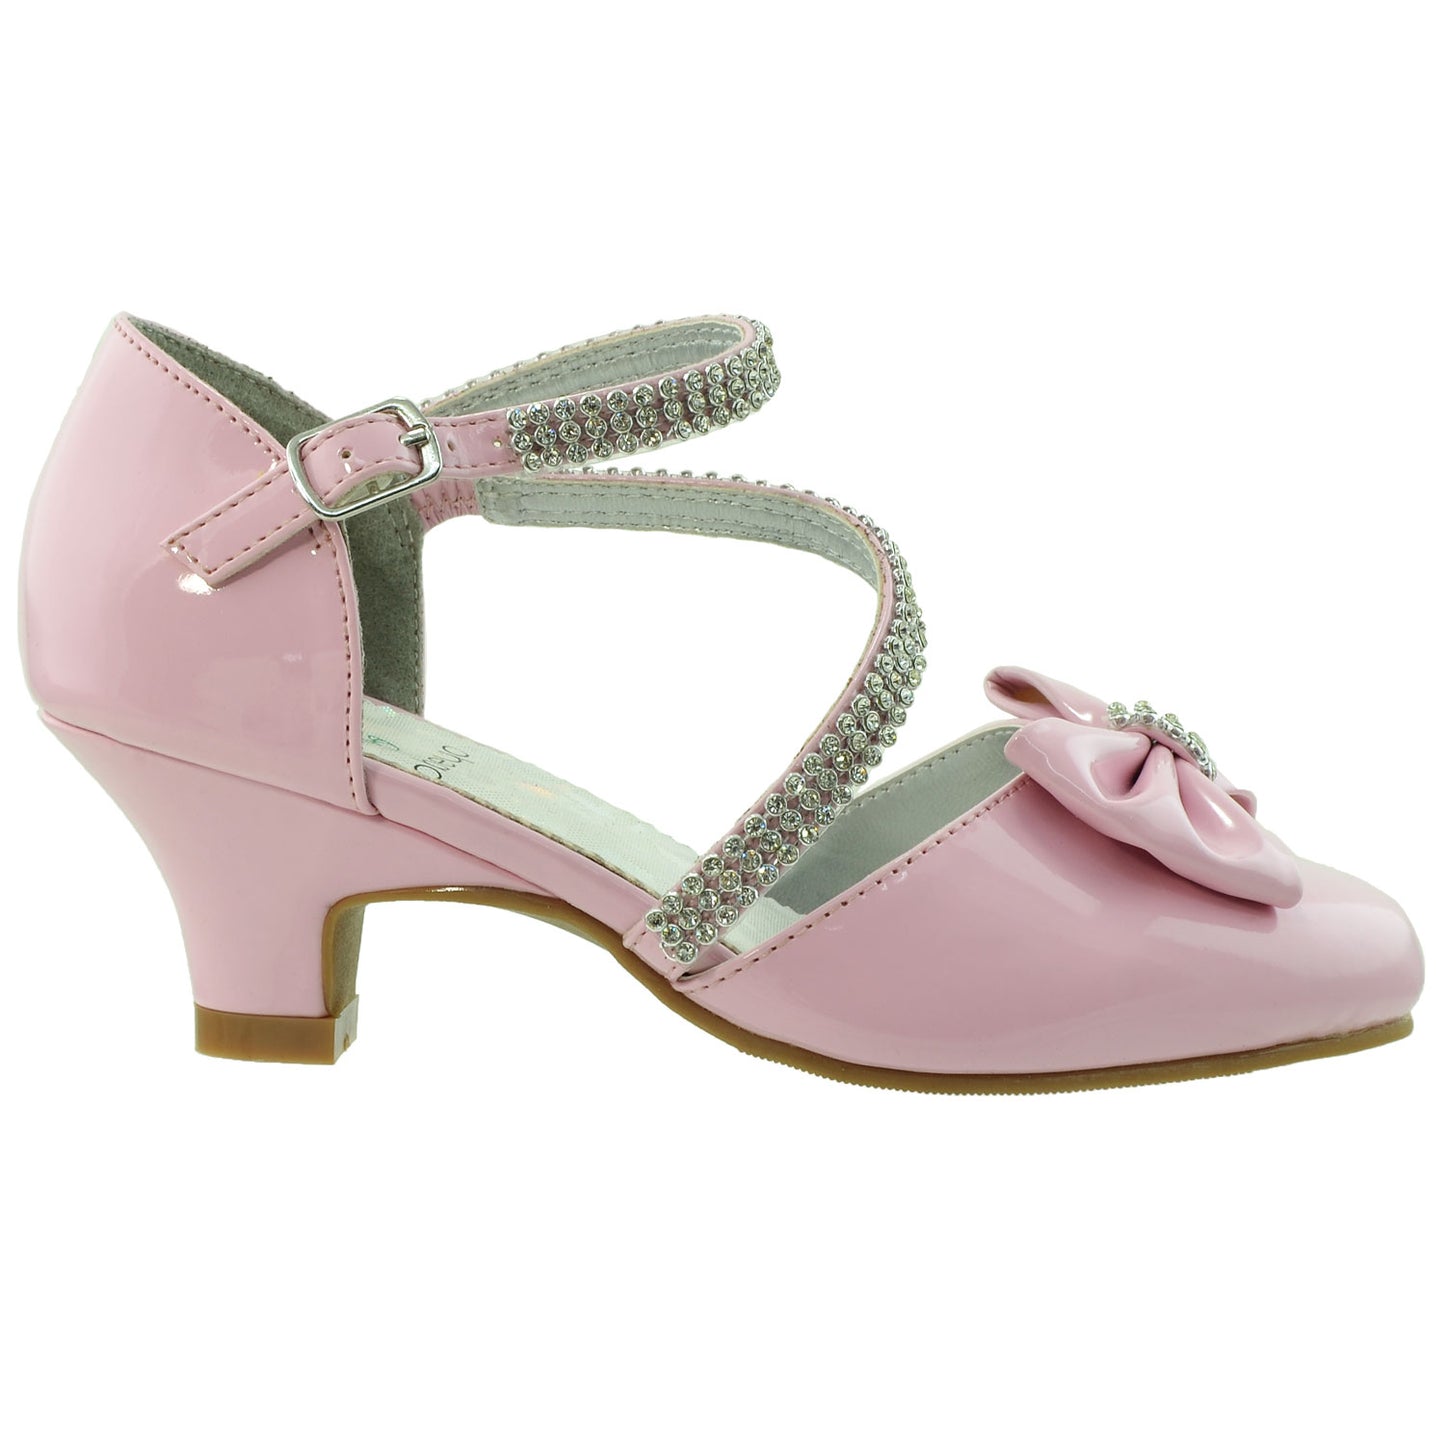 Girls Toddler Youth Pumps Rhinestone Bow Kitten Heel Dress Shoe Pink ...